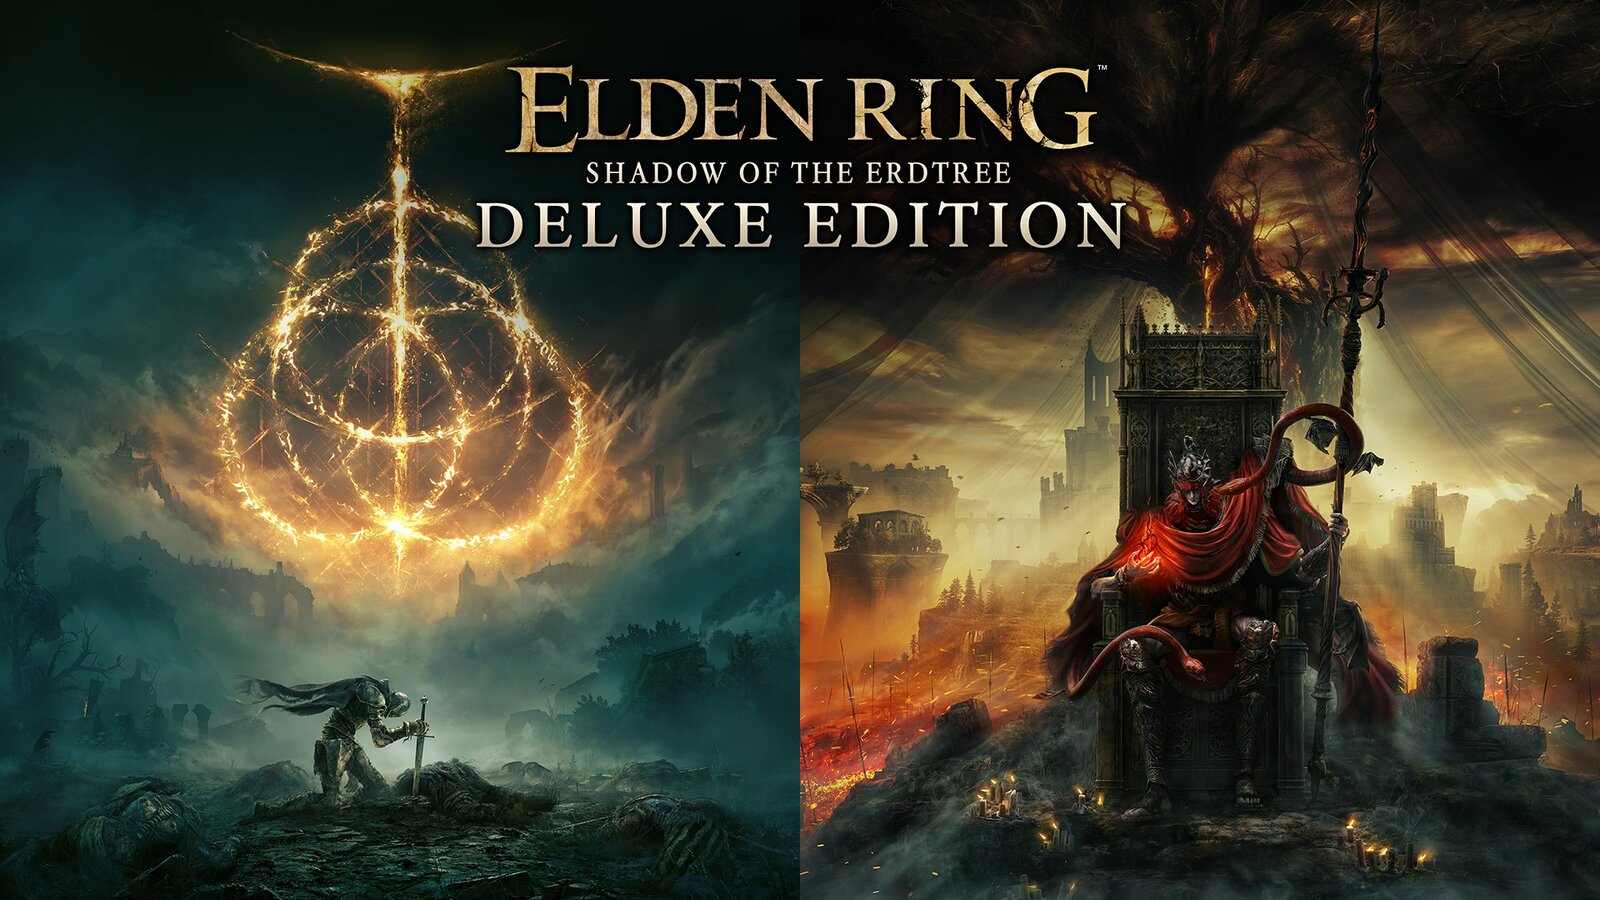 Elden Ring - Shadow of the Erdtree Deluxe Edition